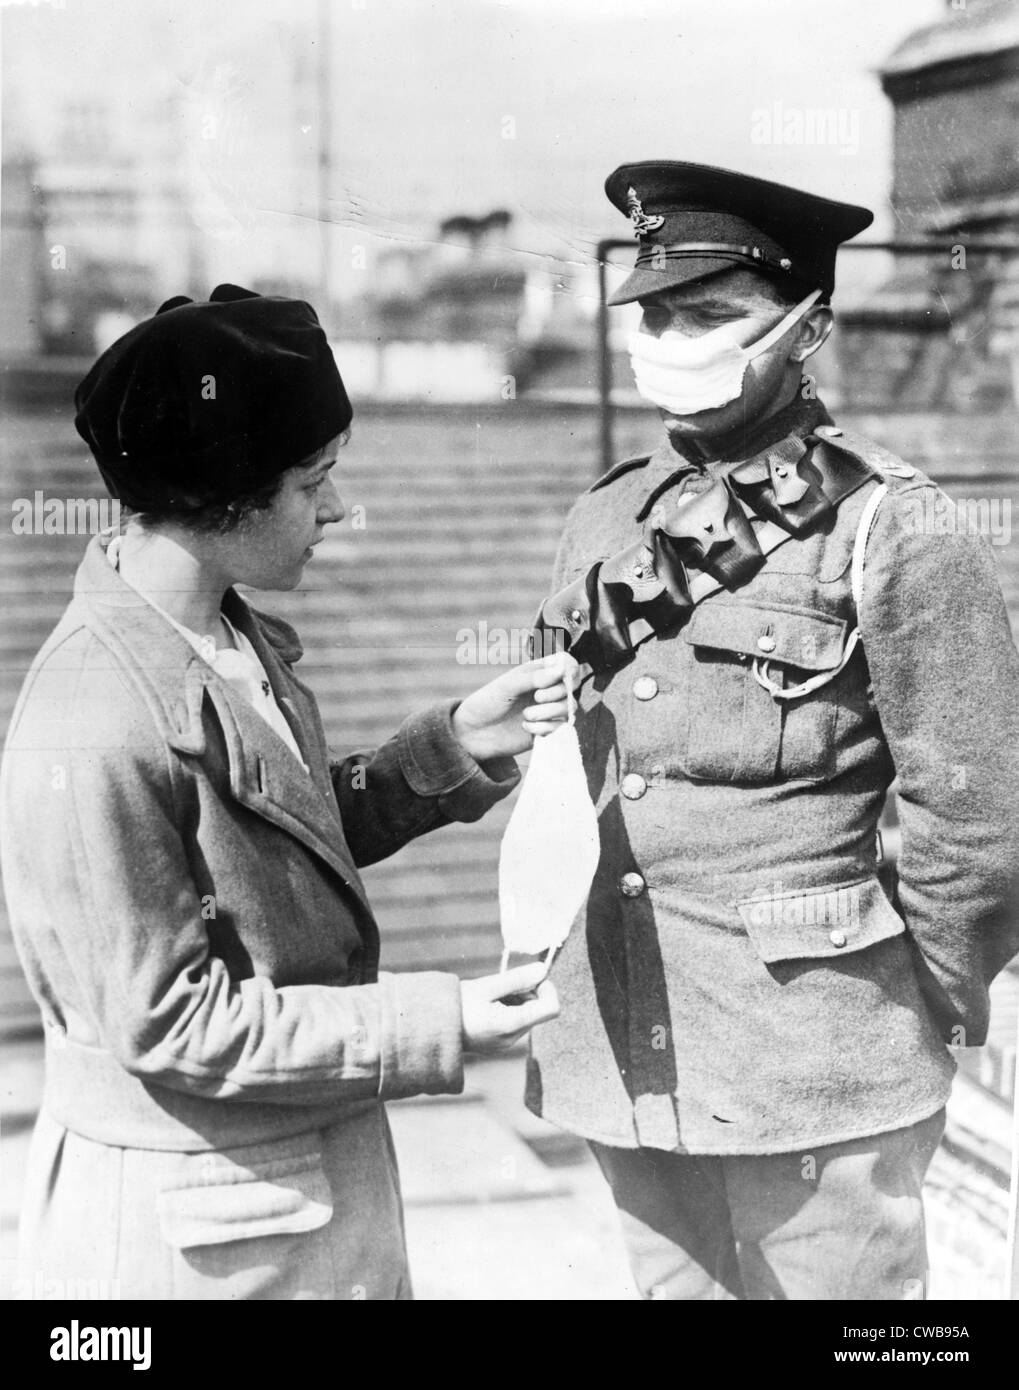 Atemschutzmaske für britische Soldaten-eine Krankenschwester zeigt eine Gesichtsmaske mit einem britischen Soldaten während der Influenza-Epidemie, ca. 1918 Stockfoto